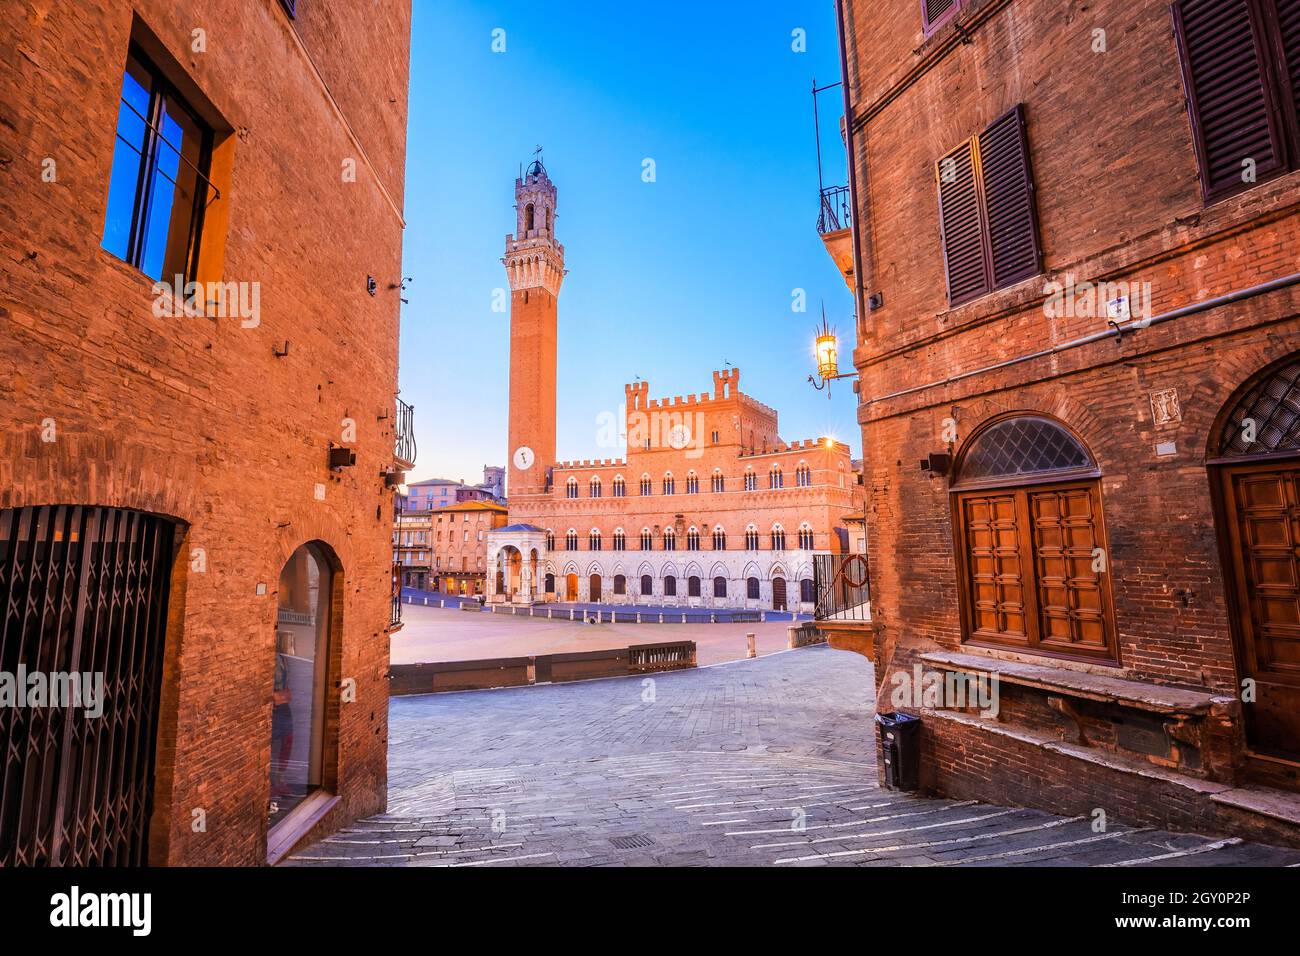 Siena, Italien. Piazza del Campo mit Palazzo Pubblico und Torre del Mangia. Stockfoto